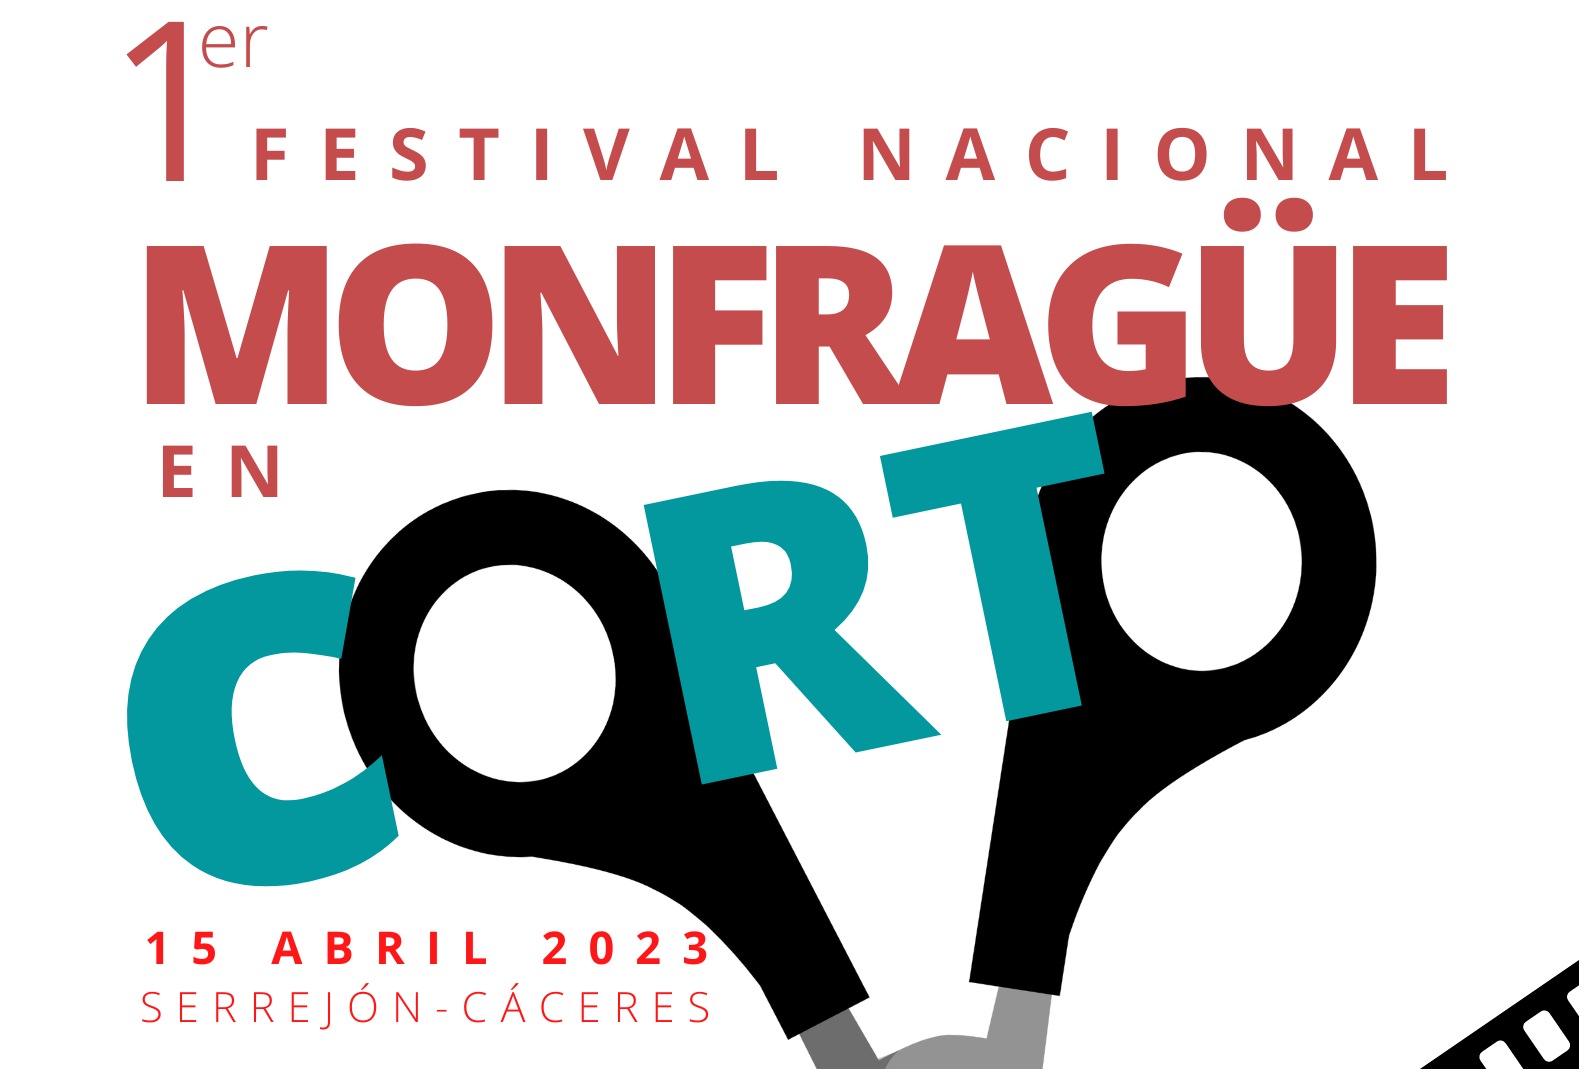 I Festival Monfragüe en Corto para jóvenes creadores